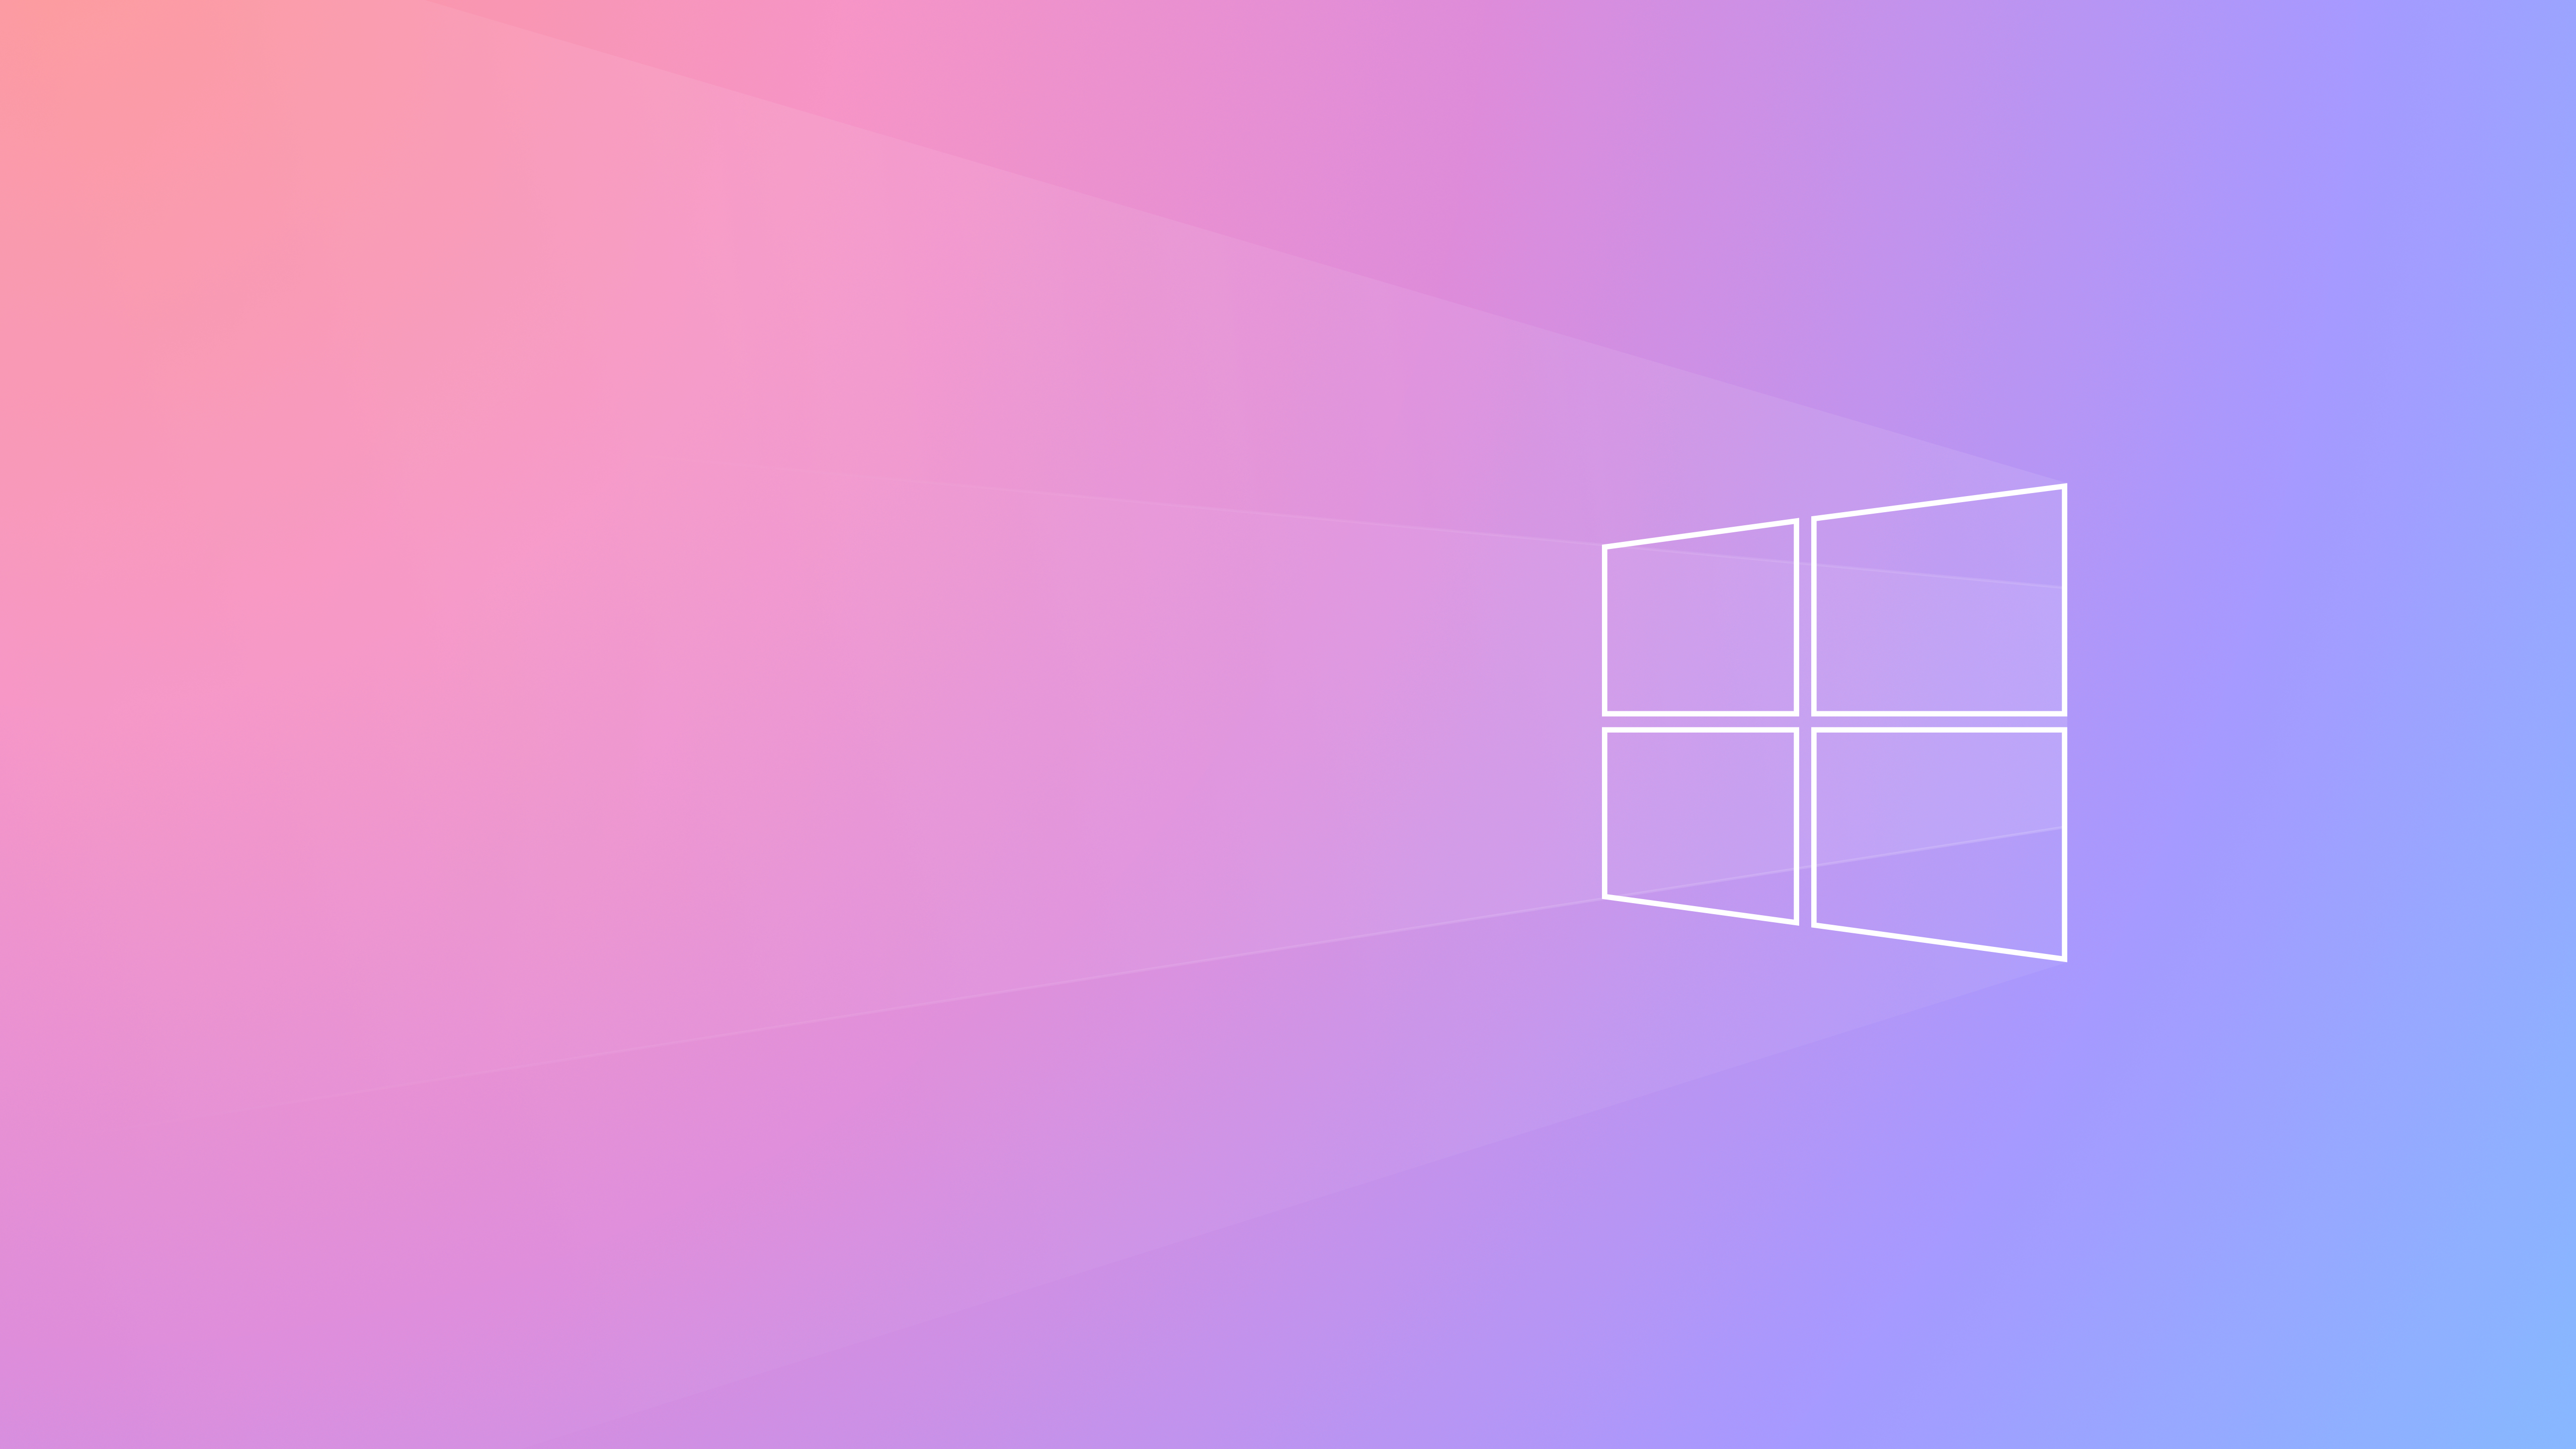 Bạn đang tìm kiếm một hình nền Windows 10 độc đáo để cập nhật cho desktop của bạn? Chúng tôi đã có giải pháp! Lấy cảm hứng từ thiên nhiên và kiến ​​trúc hiện đại, hình nền Windows 10 này sẽ làm cho màn hình desktop của bạn trở nên phong phú và sinh động. Hãy chiêm ngưỡng ngay bức ảnh nền Windows 10 này và cảm nhận sự tinh tế của nó!